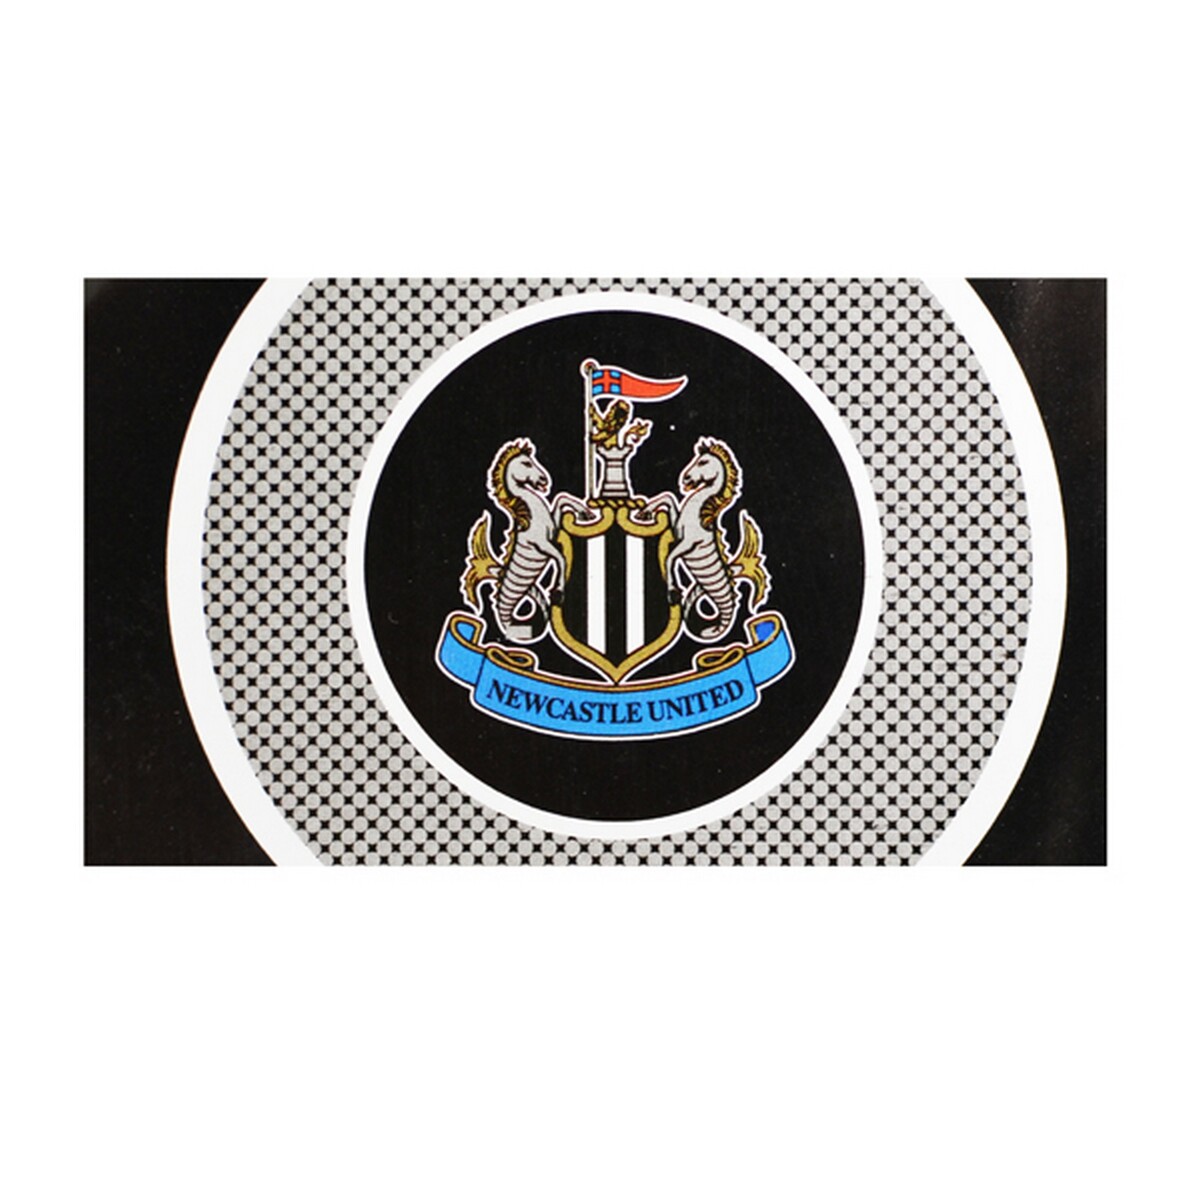 プレミアリーグ リバプール サポーター サッカー 応援旗 ニューカッスル ユナイテッド フットボールクラブ Newcastle United Fc オフィシャル商品 ブルズアイ クレスト フラッグ 旗 海外直送